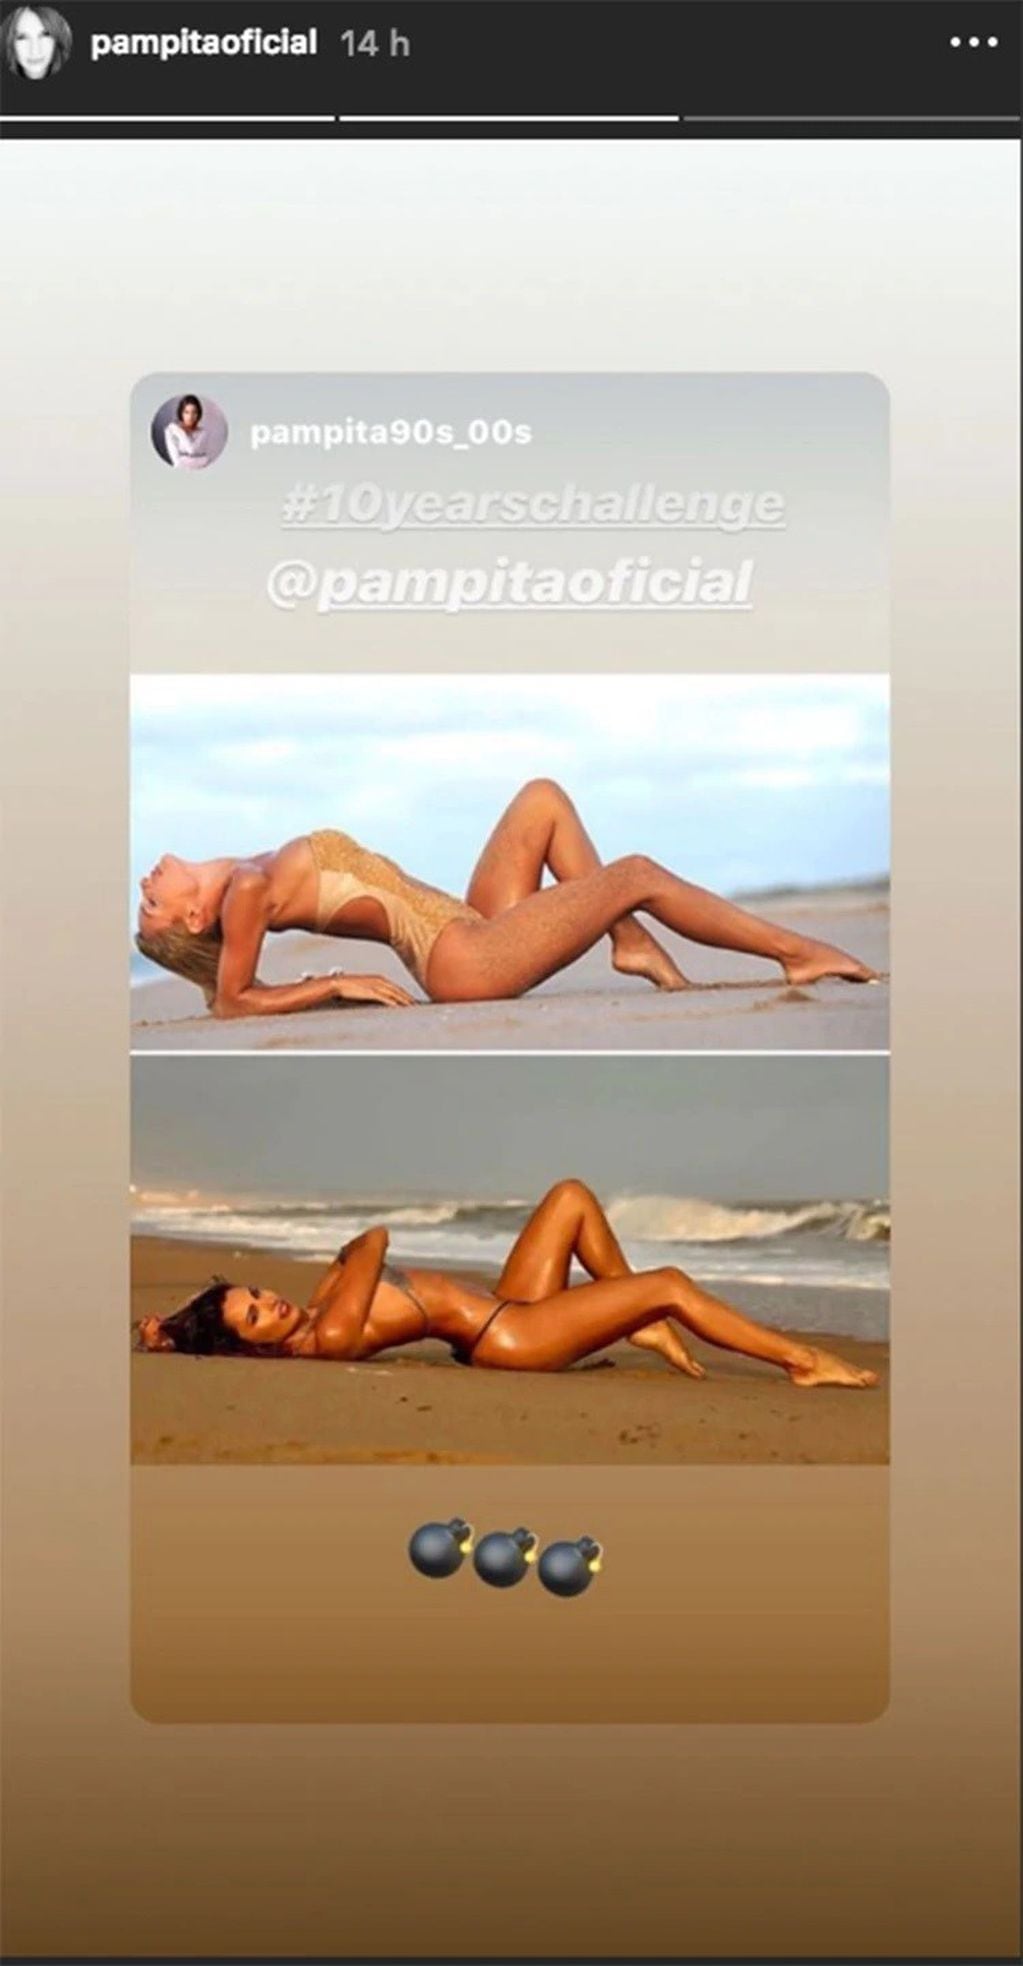 Pampita se sumó al #10yearschallenge con fotos sugerentes.